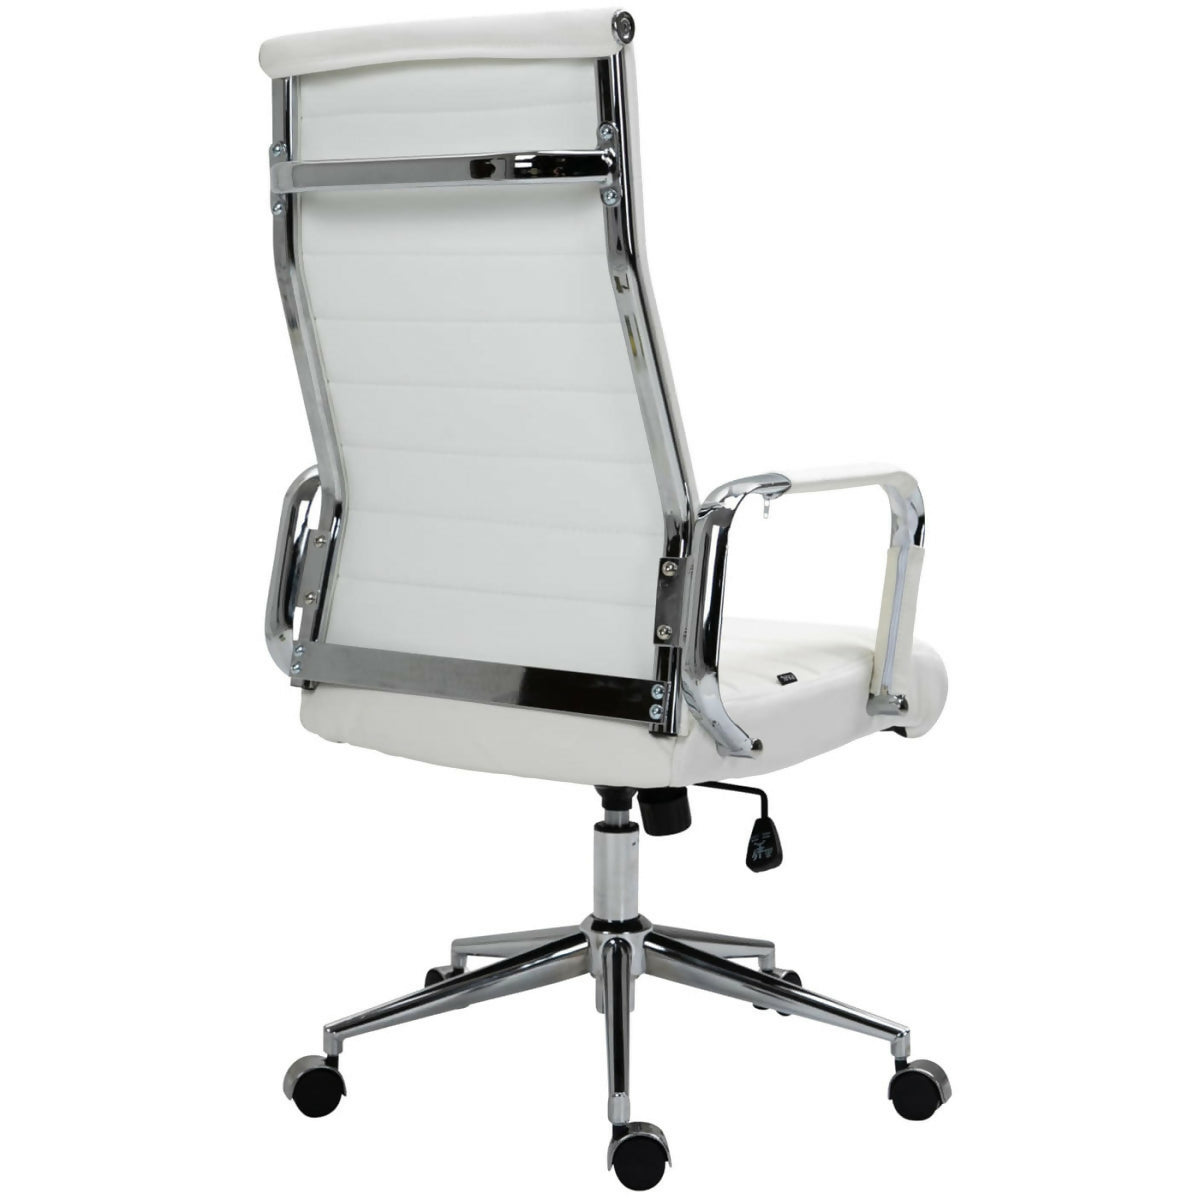 Kolumbus office chair - White